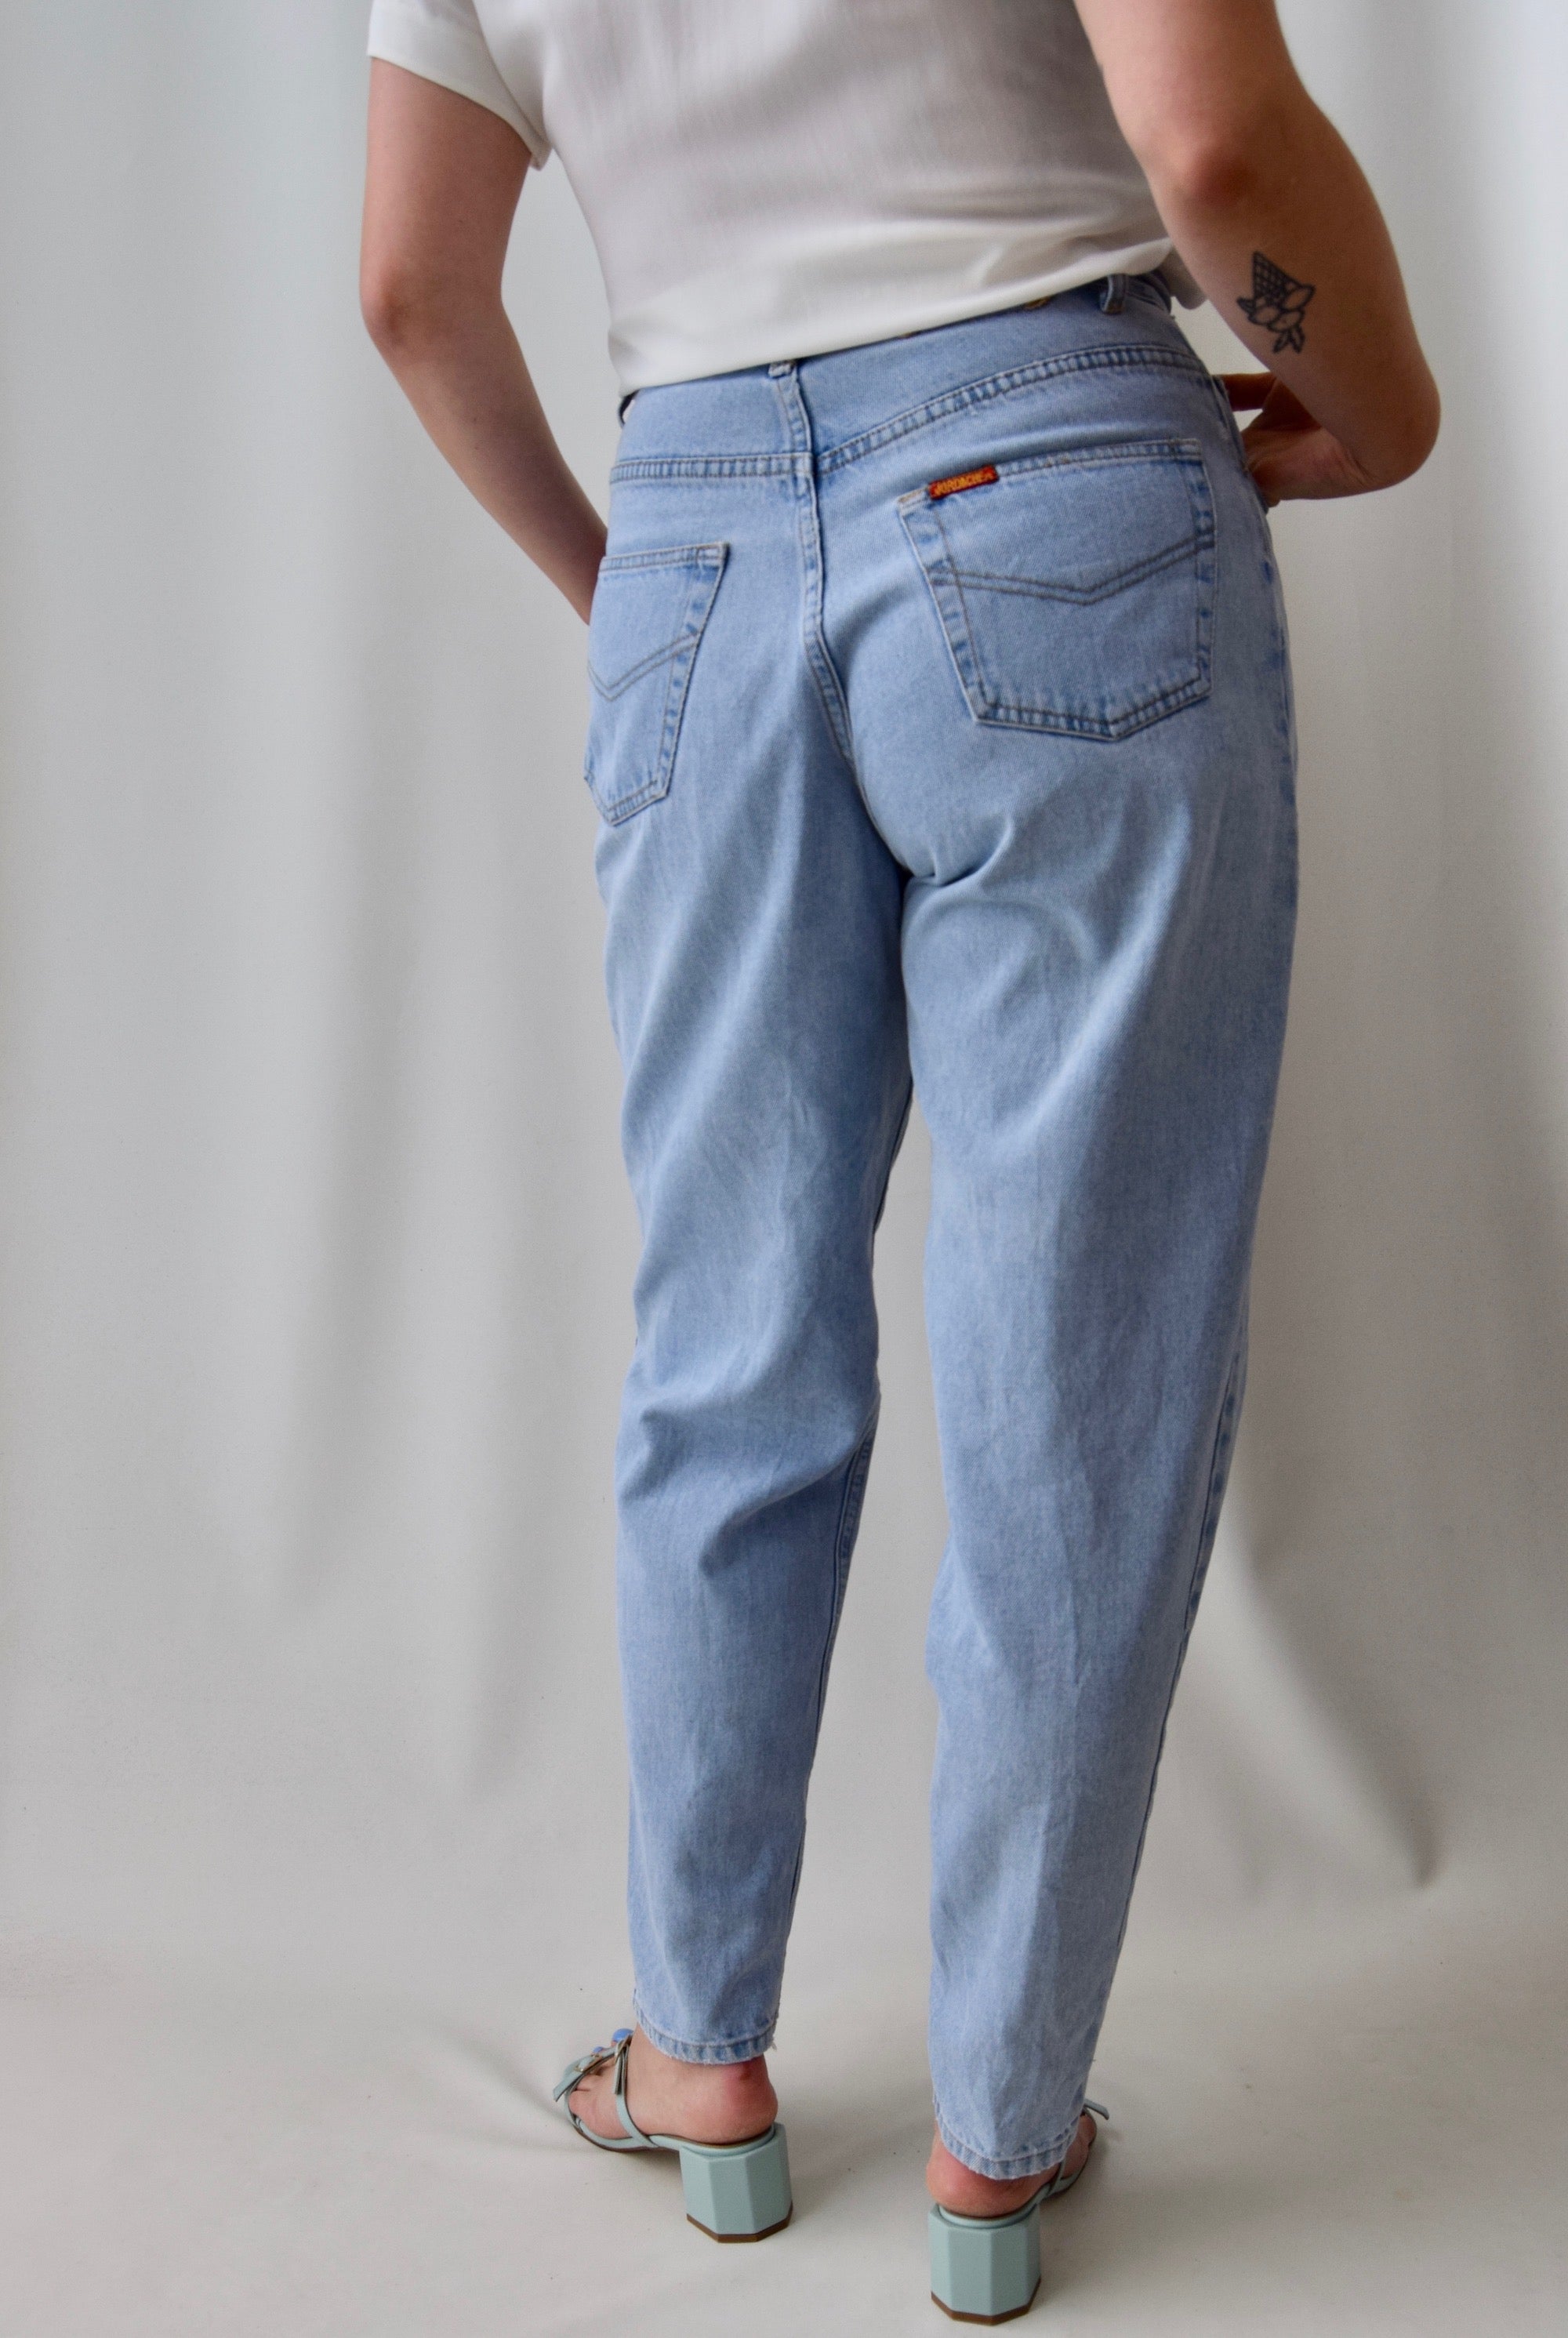 90's Jordache Jeans